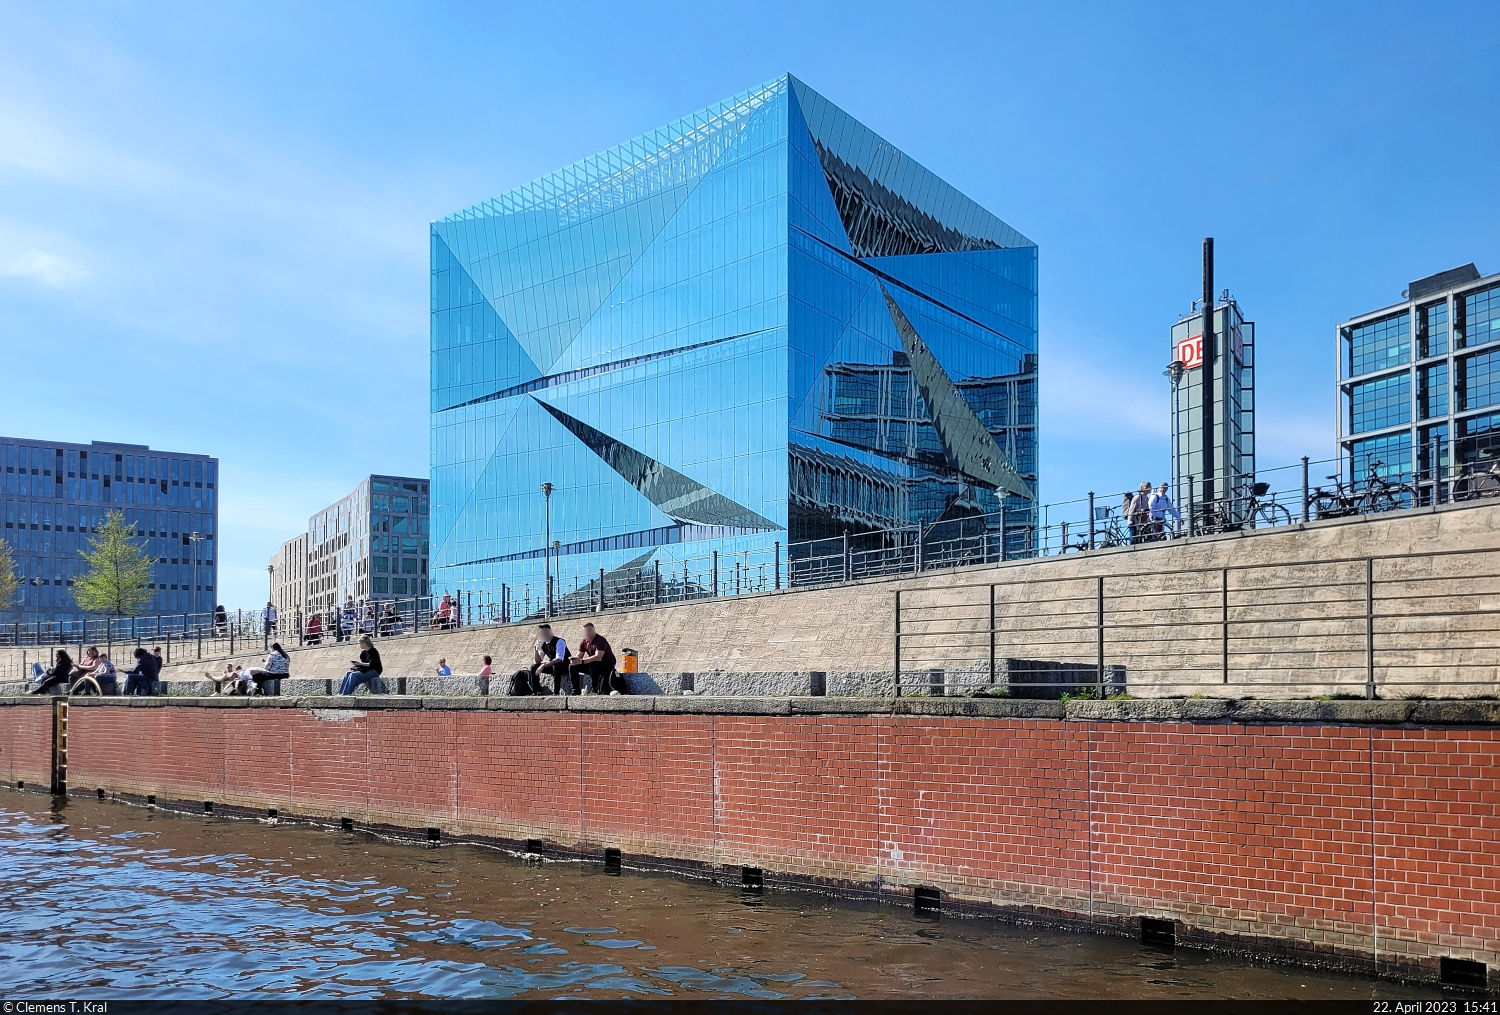 Der  3XN Cube Berlin  neben dem Hauptbahnhof ist vollstndig aus Glas und spiegelt seine Umgebung durch seine auffllige Form mehrfach. Er beherbergt hauptschlich Bros und wurde im Februar 2020 erffnet.

🕓 22.4.2023 | 15:41 Uhr